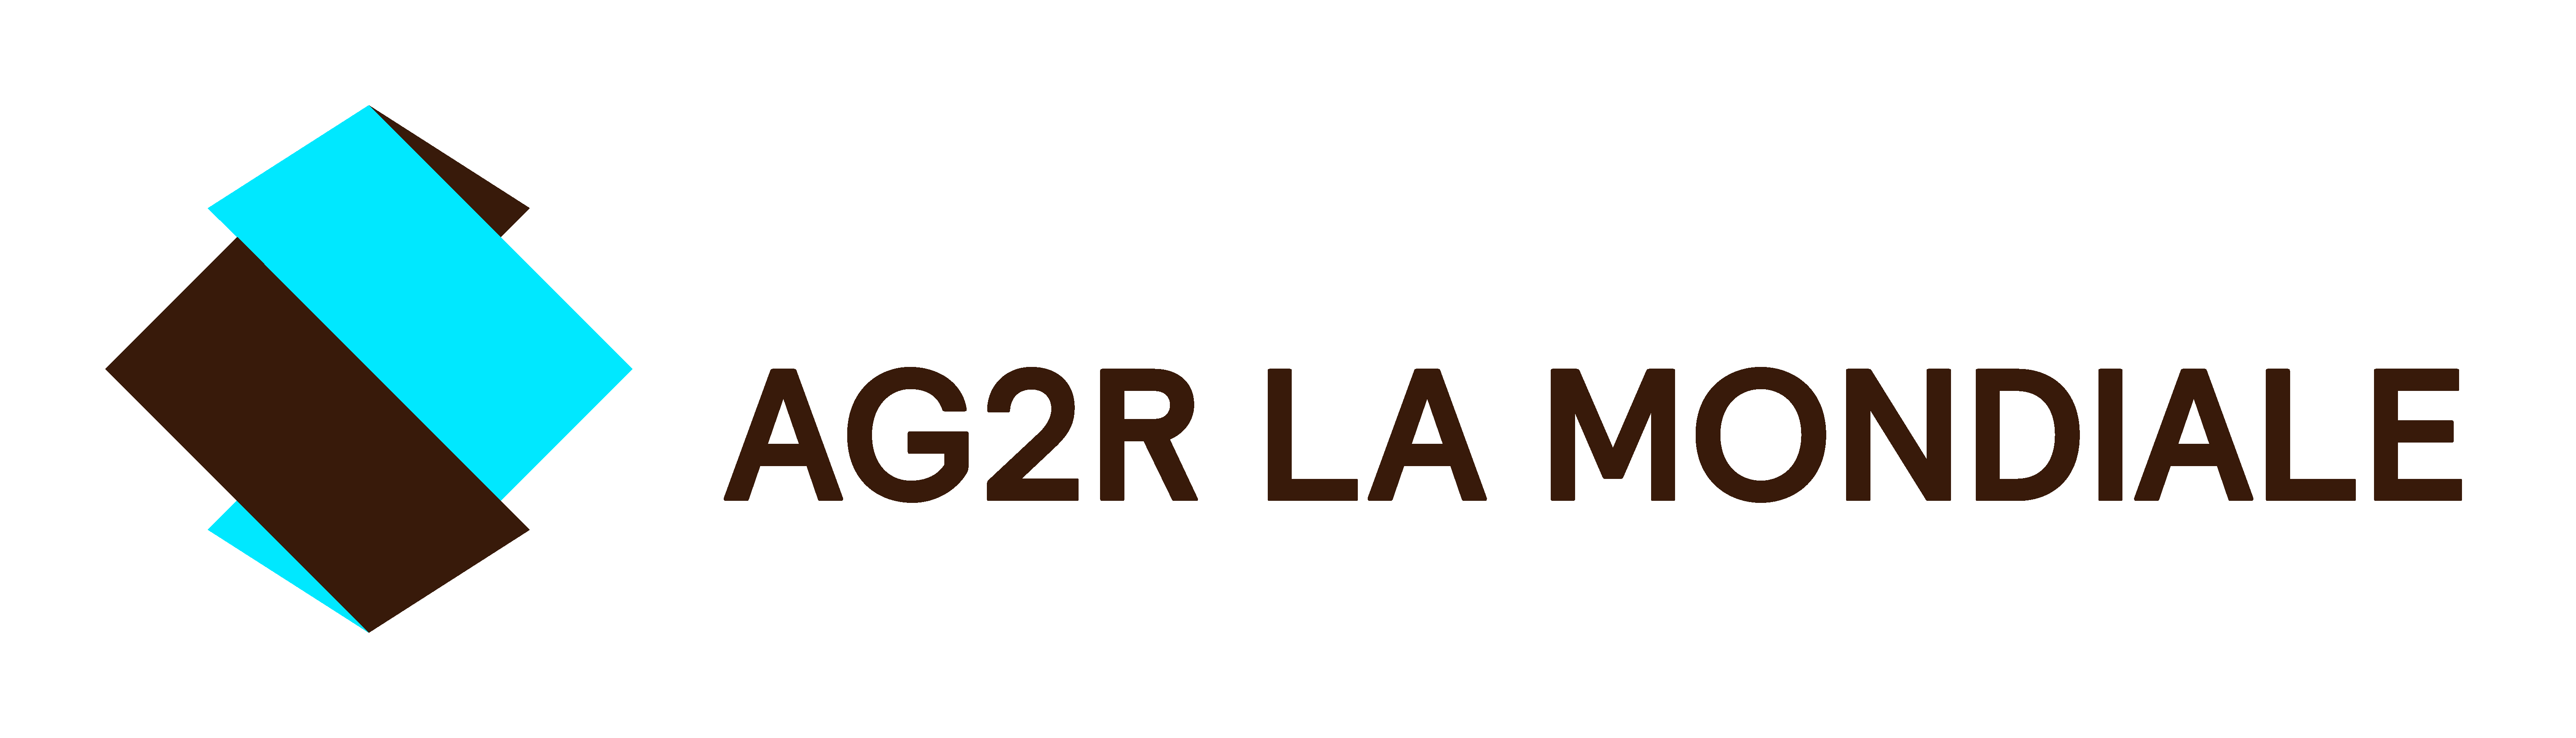 Logo Ag2r